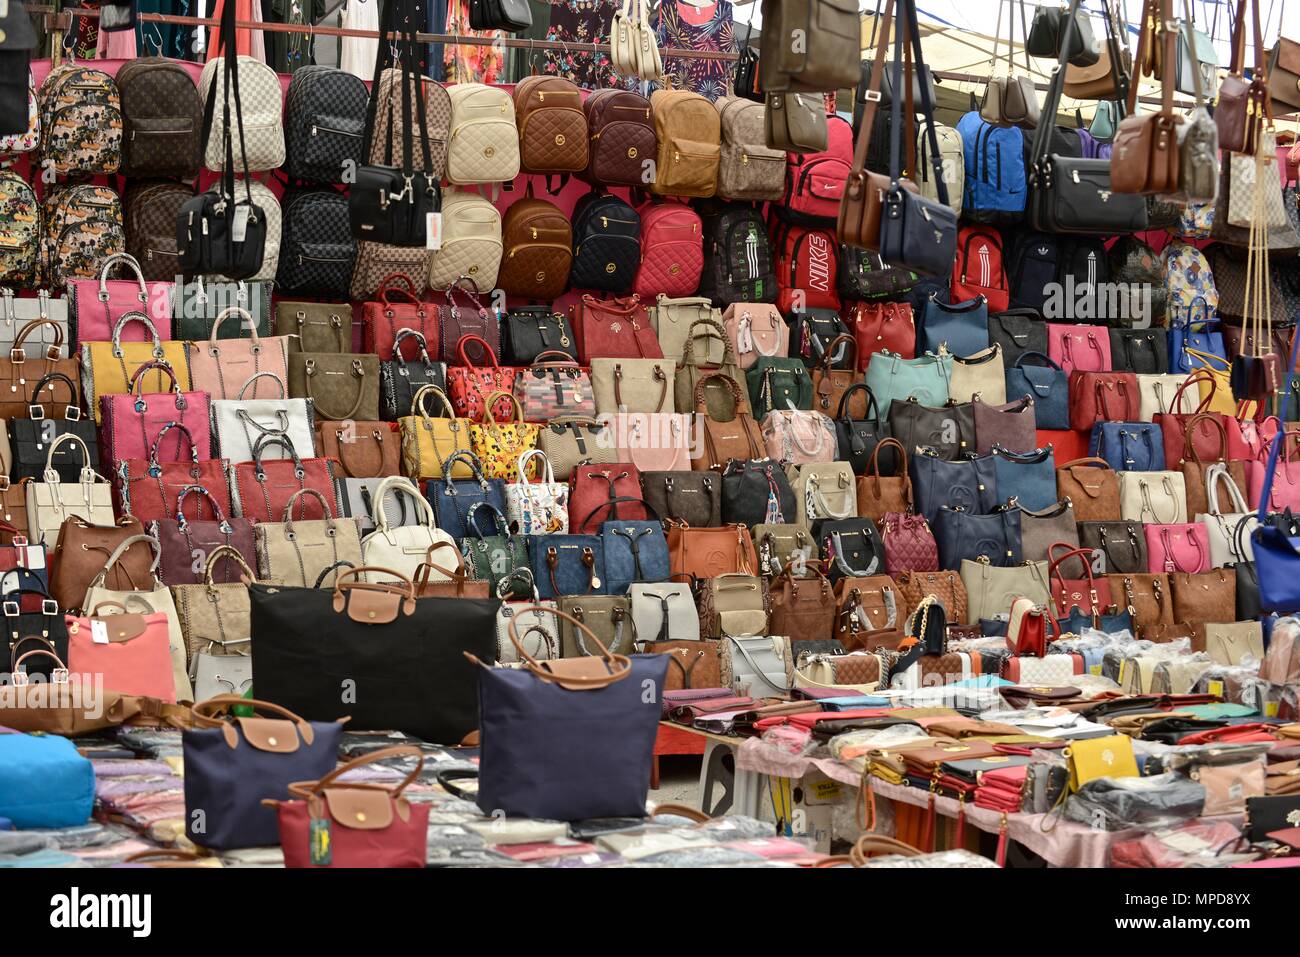 Turkey, Fethiye market tuesday Stock Photo - Alamy